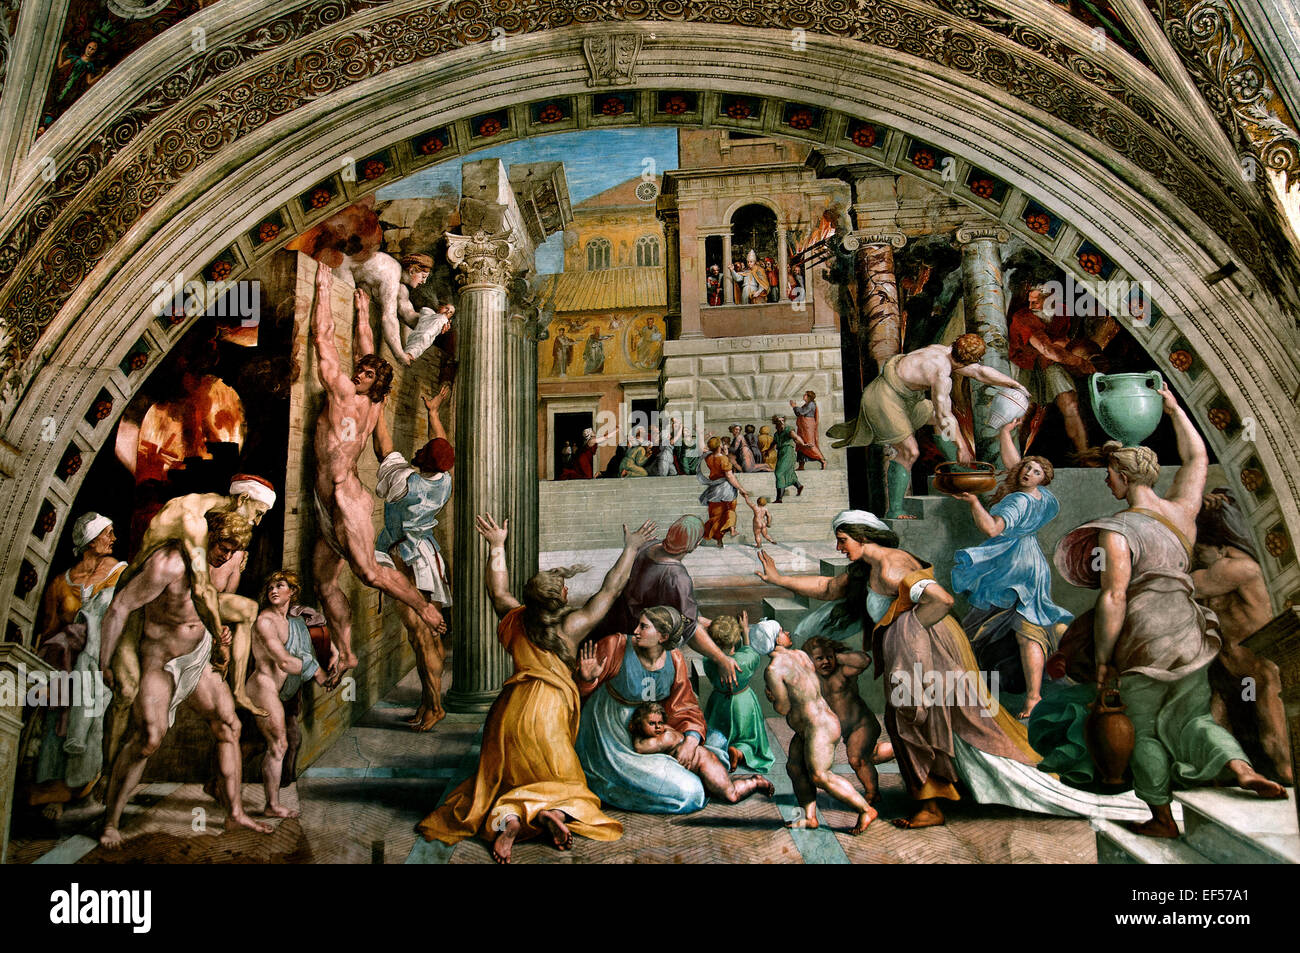 Le feu dans le Borgo 1514 l'incendie dans le Borgo Raphael Chambres ( tanze di Raffaello ) appartements pontificaux Vatican Rome Italie ( Raffaello Sanzio da Urbino 1483 - 1520 connu sous le nom de Raphael ) la fresque a probablement peint par son assistant Giulio Romano Banque D'Images